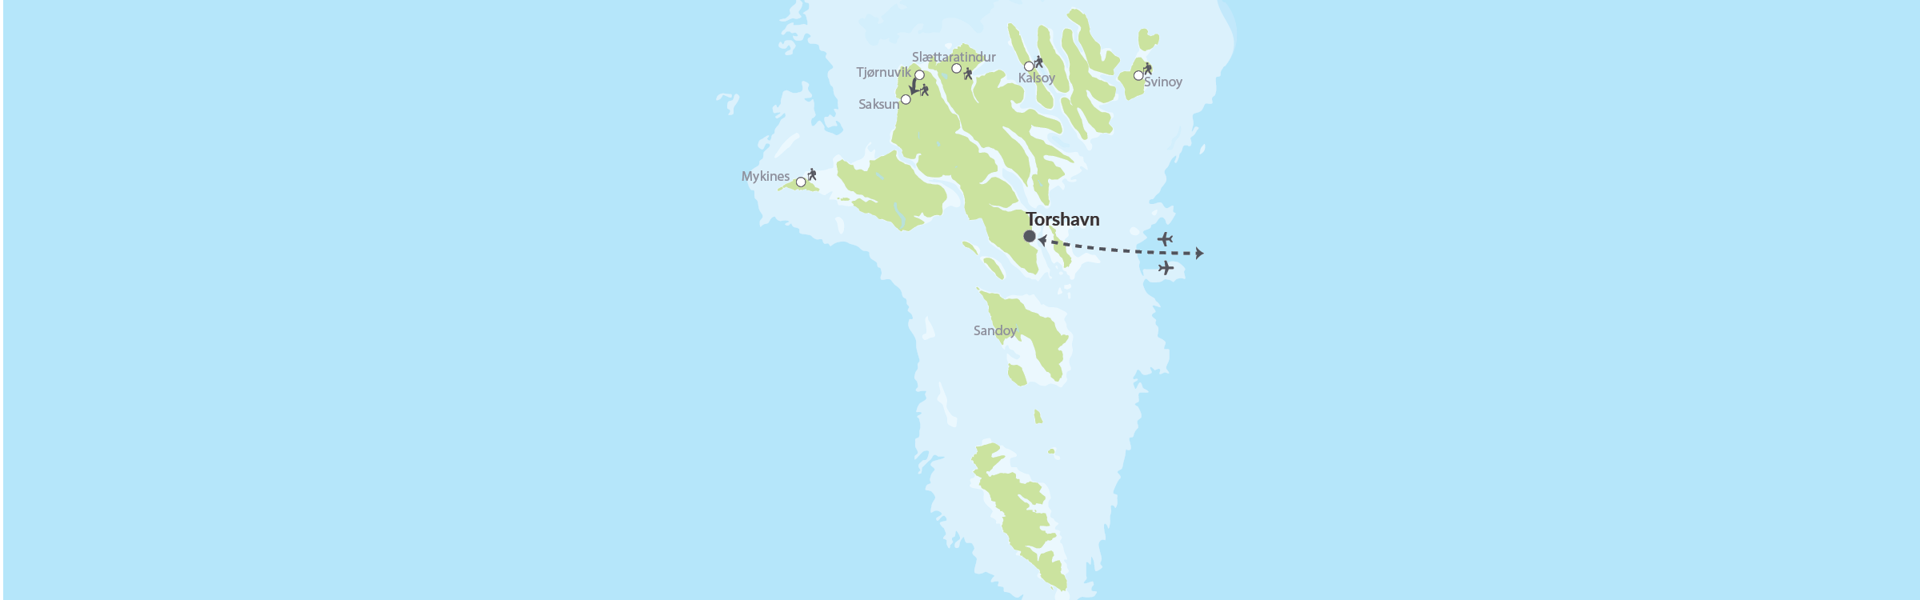 60945 Vandring På Færøerne Med Guide